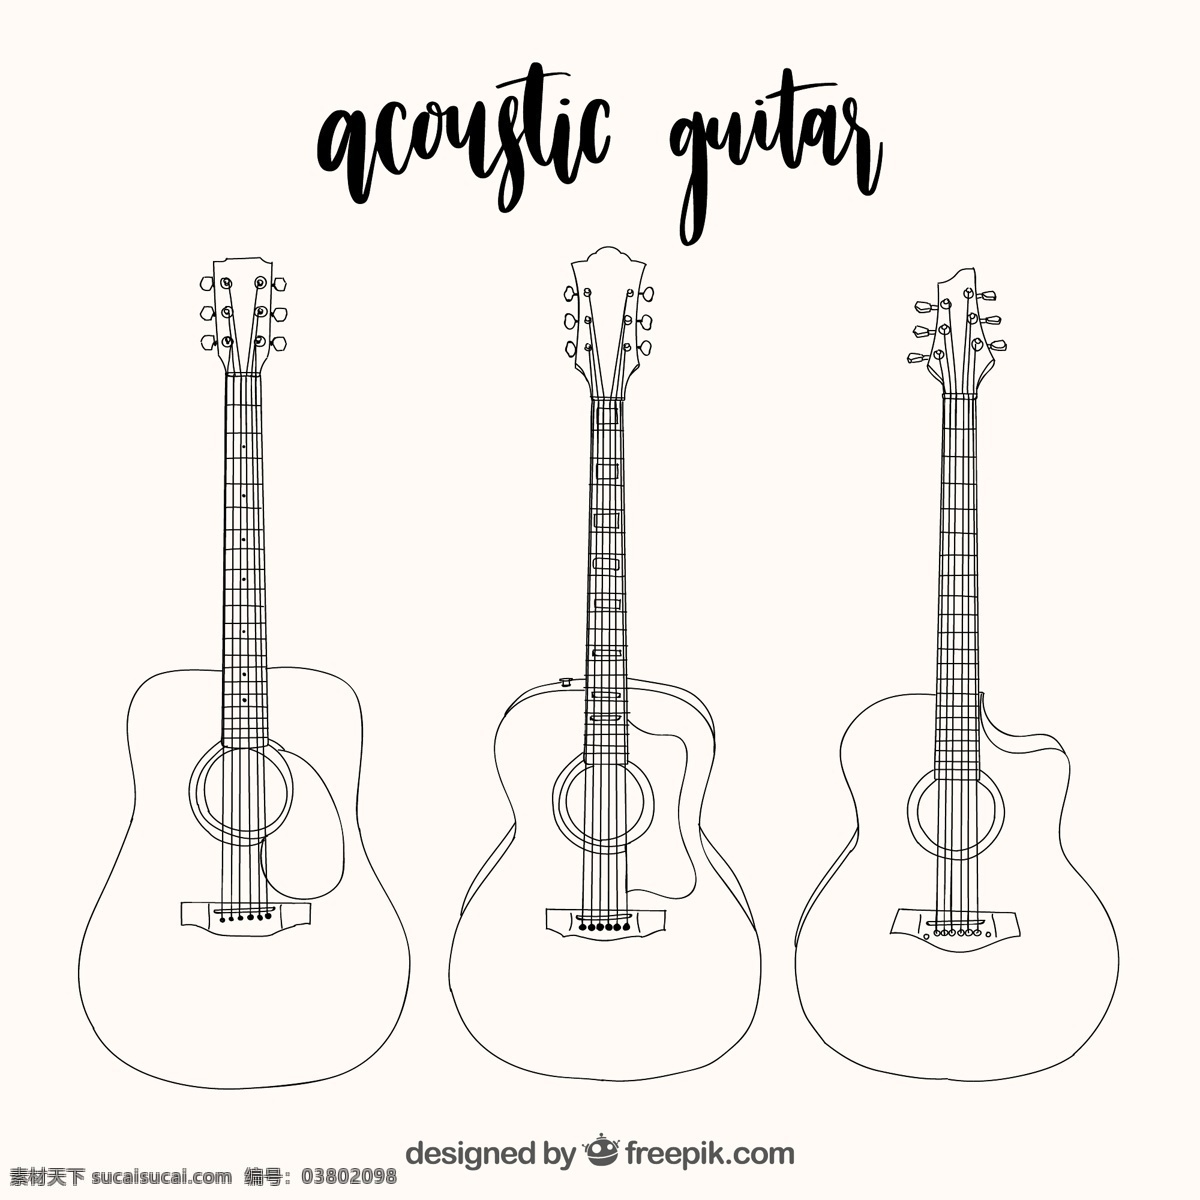 三原 声 吉他 选择 手绘 风格 音乐方面 声音 音乐 游戏 乐器 画 三 歌曲 仪器 设备 选择的旋律 吉他声